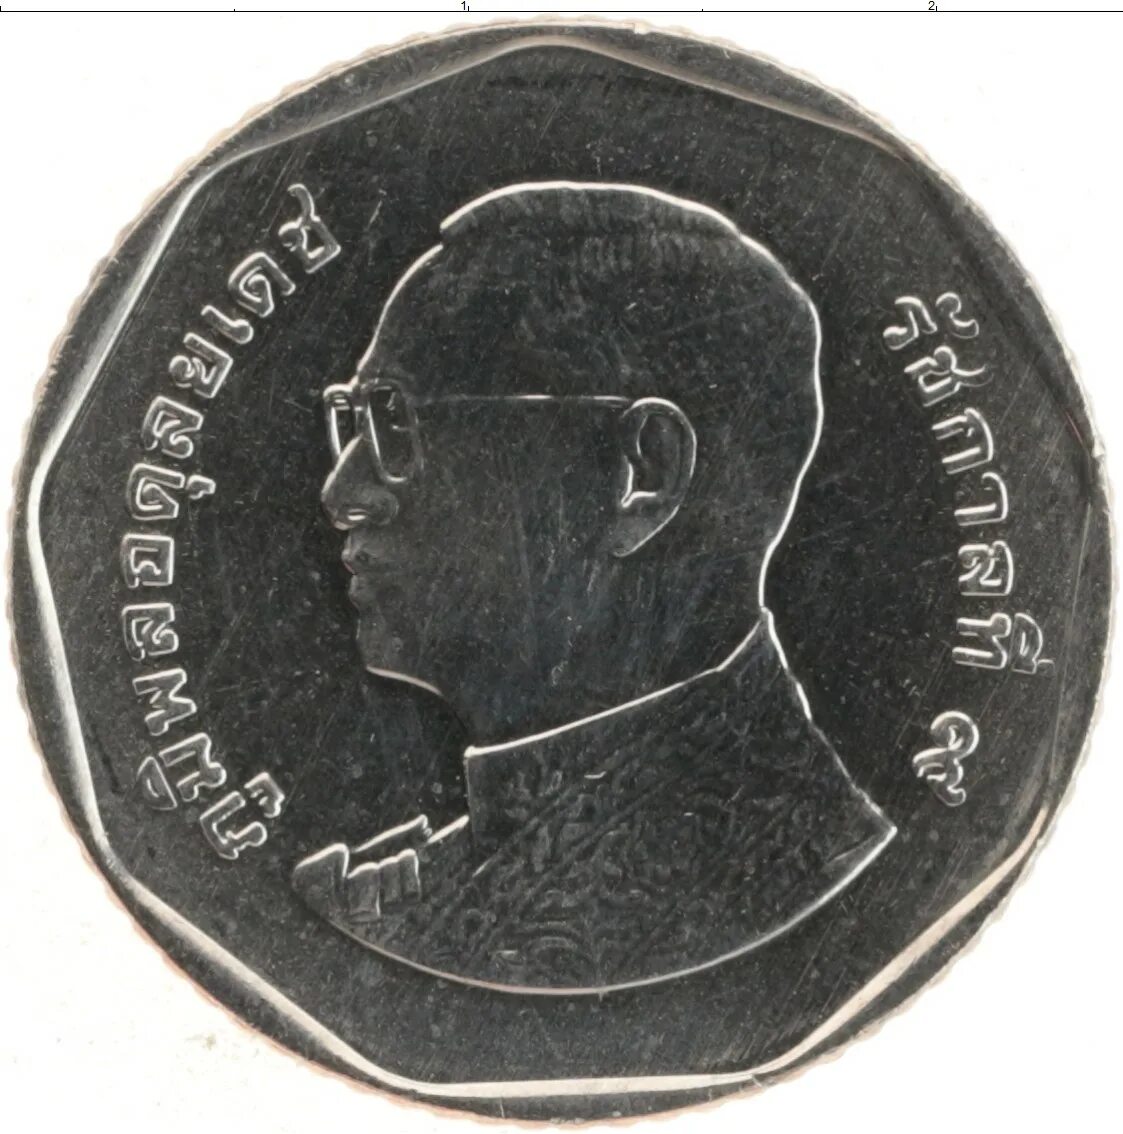 Таиландская монета 5 бат. Тайские монеты 5 бат. Тацландские монеты 5 бат. Монета 5 Батов Таиланд.